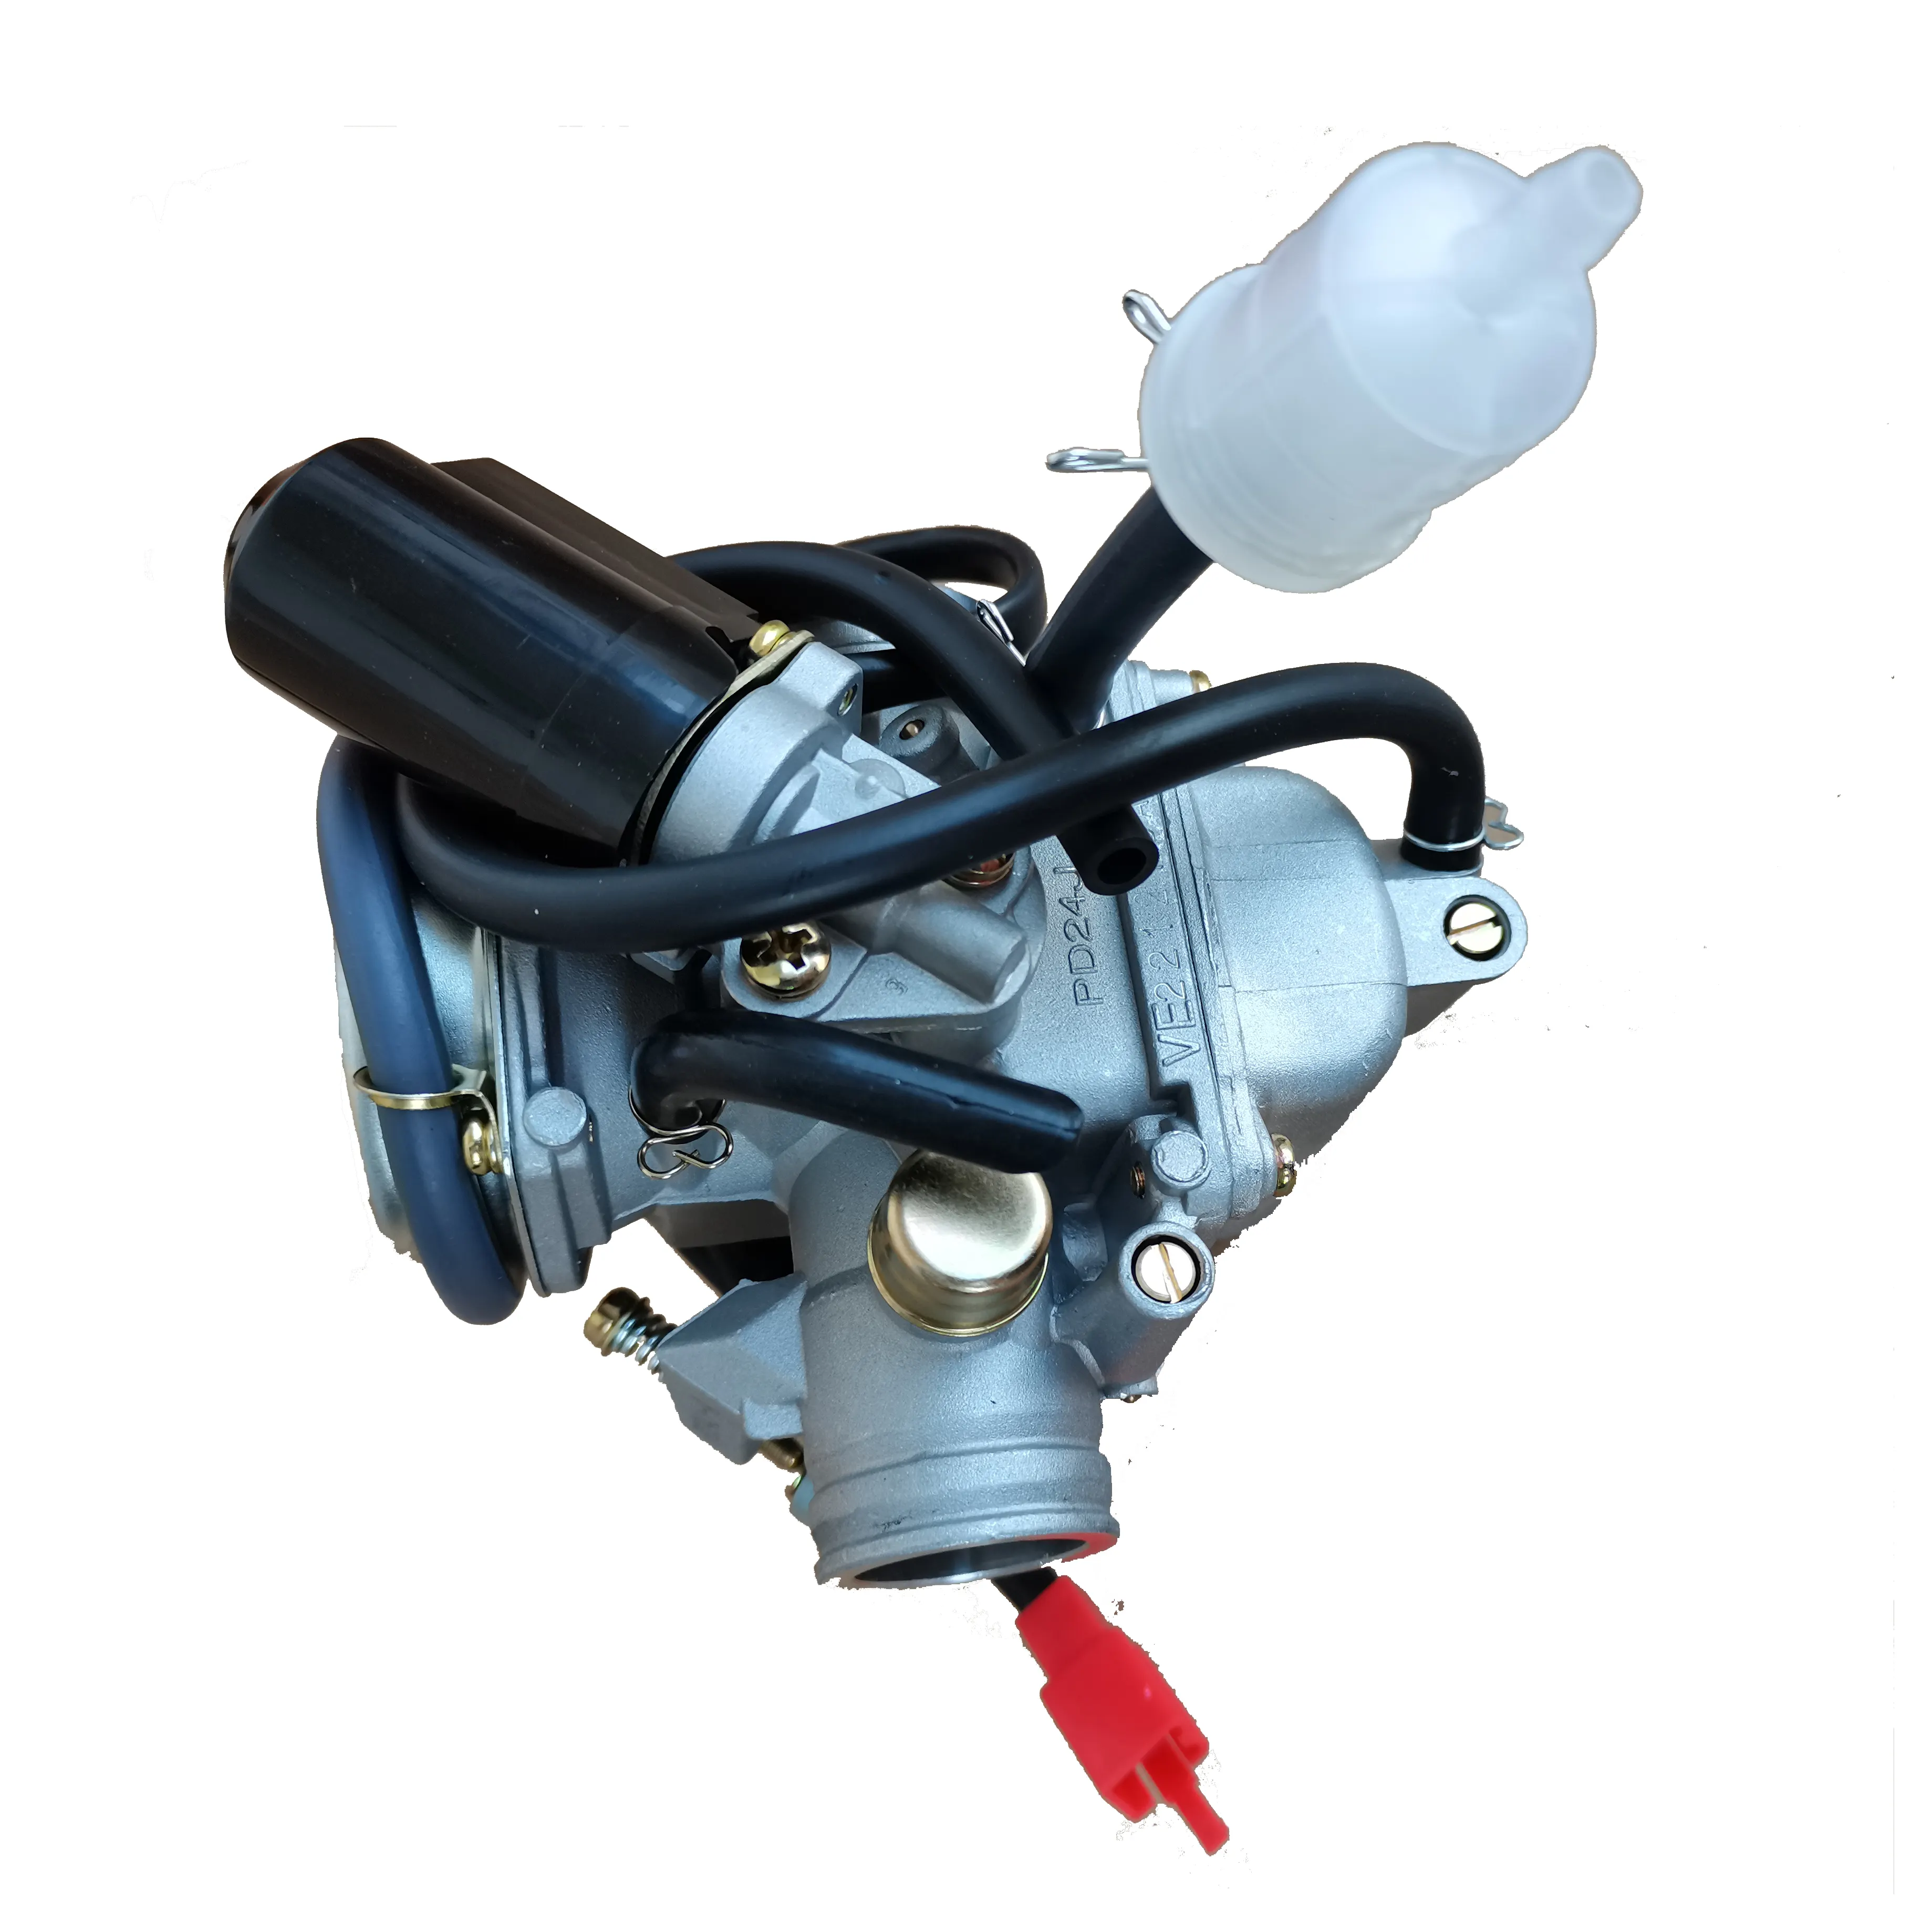 150cc/200cc ATV GY6 motoru için karbüratör